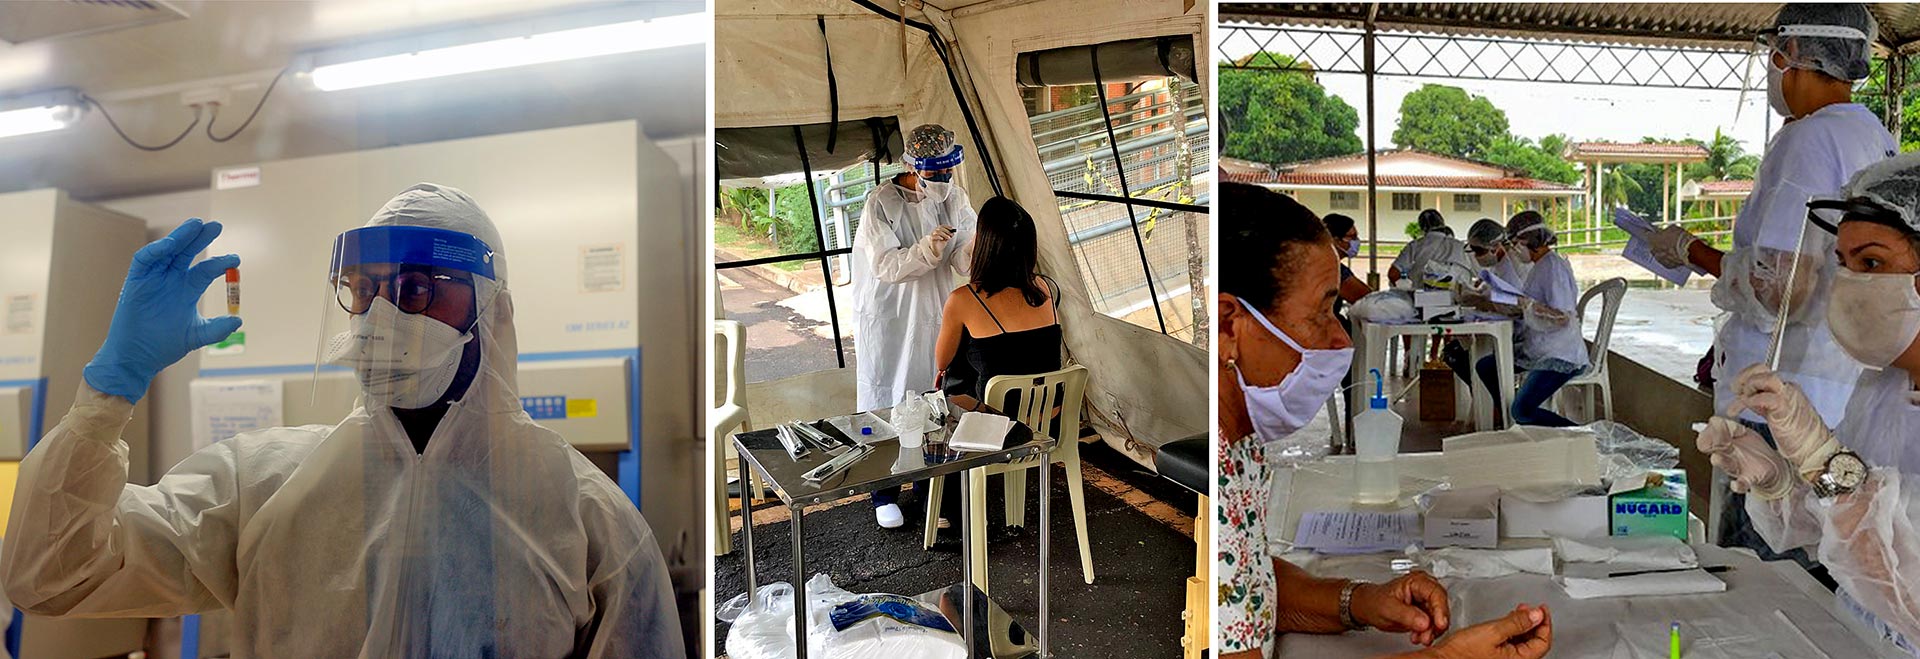 montagem de fotos mostra profissionais de saúde com roupas de segurança e manuseando instrumentos e testes para detectar o coronavírus